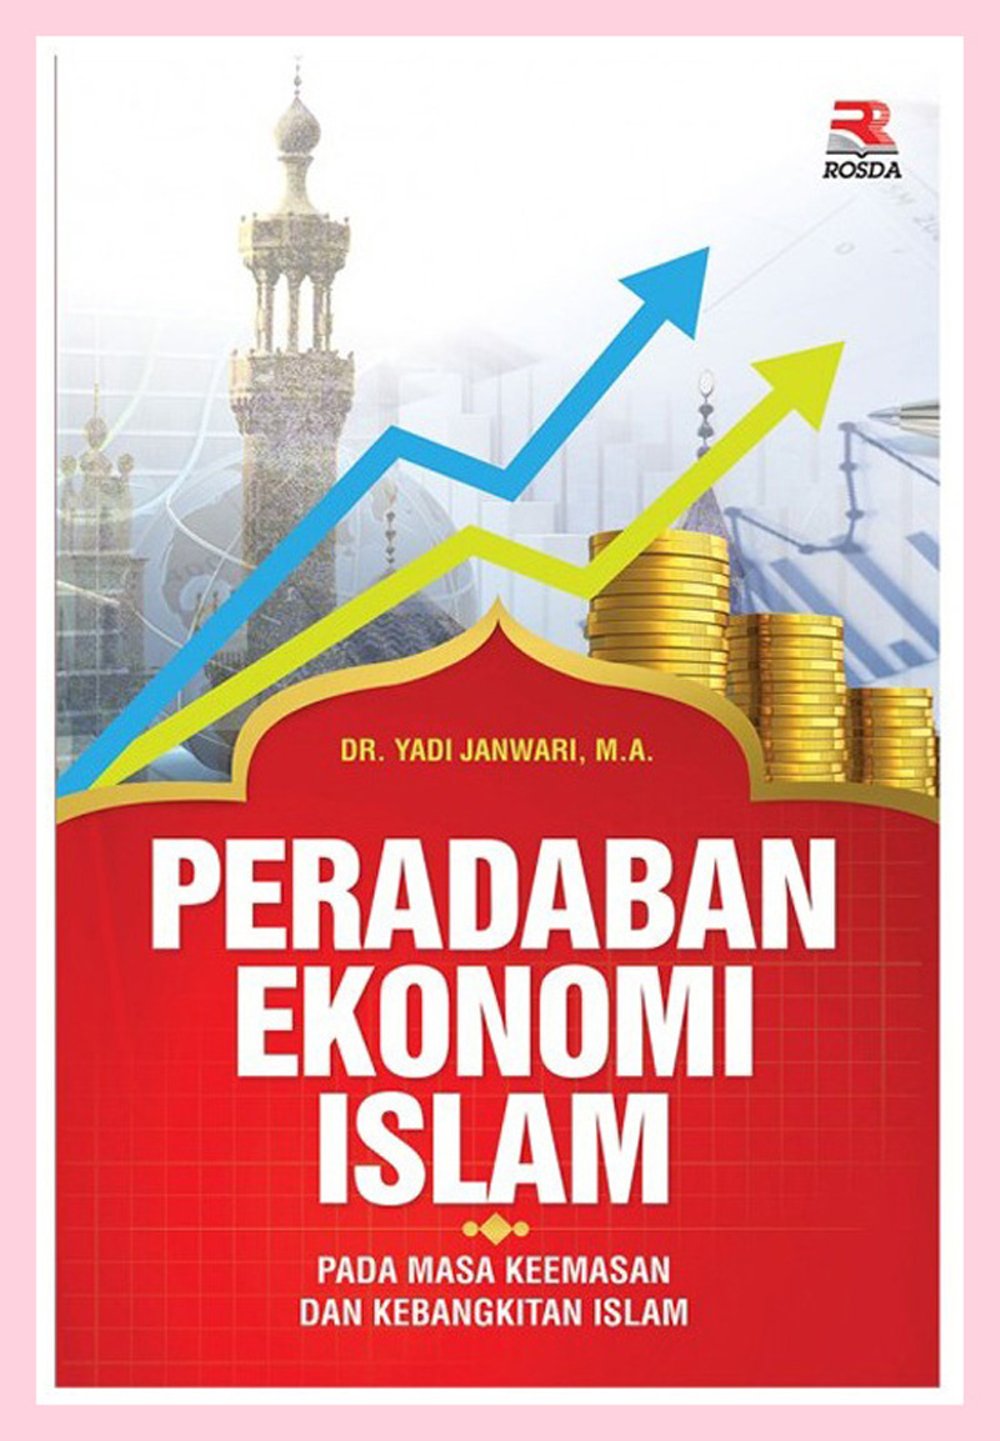 Peradaban ekonomi Islam pada masa keemasan dan kebangkitan Islam